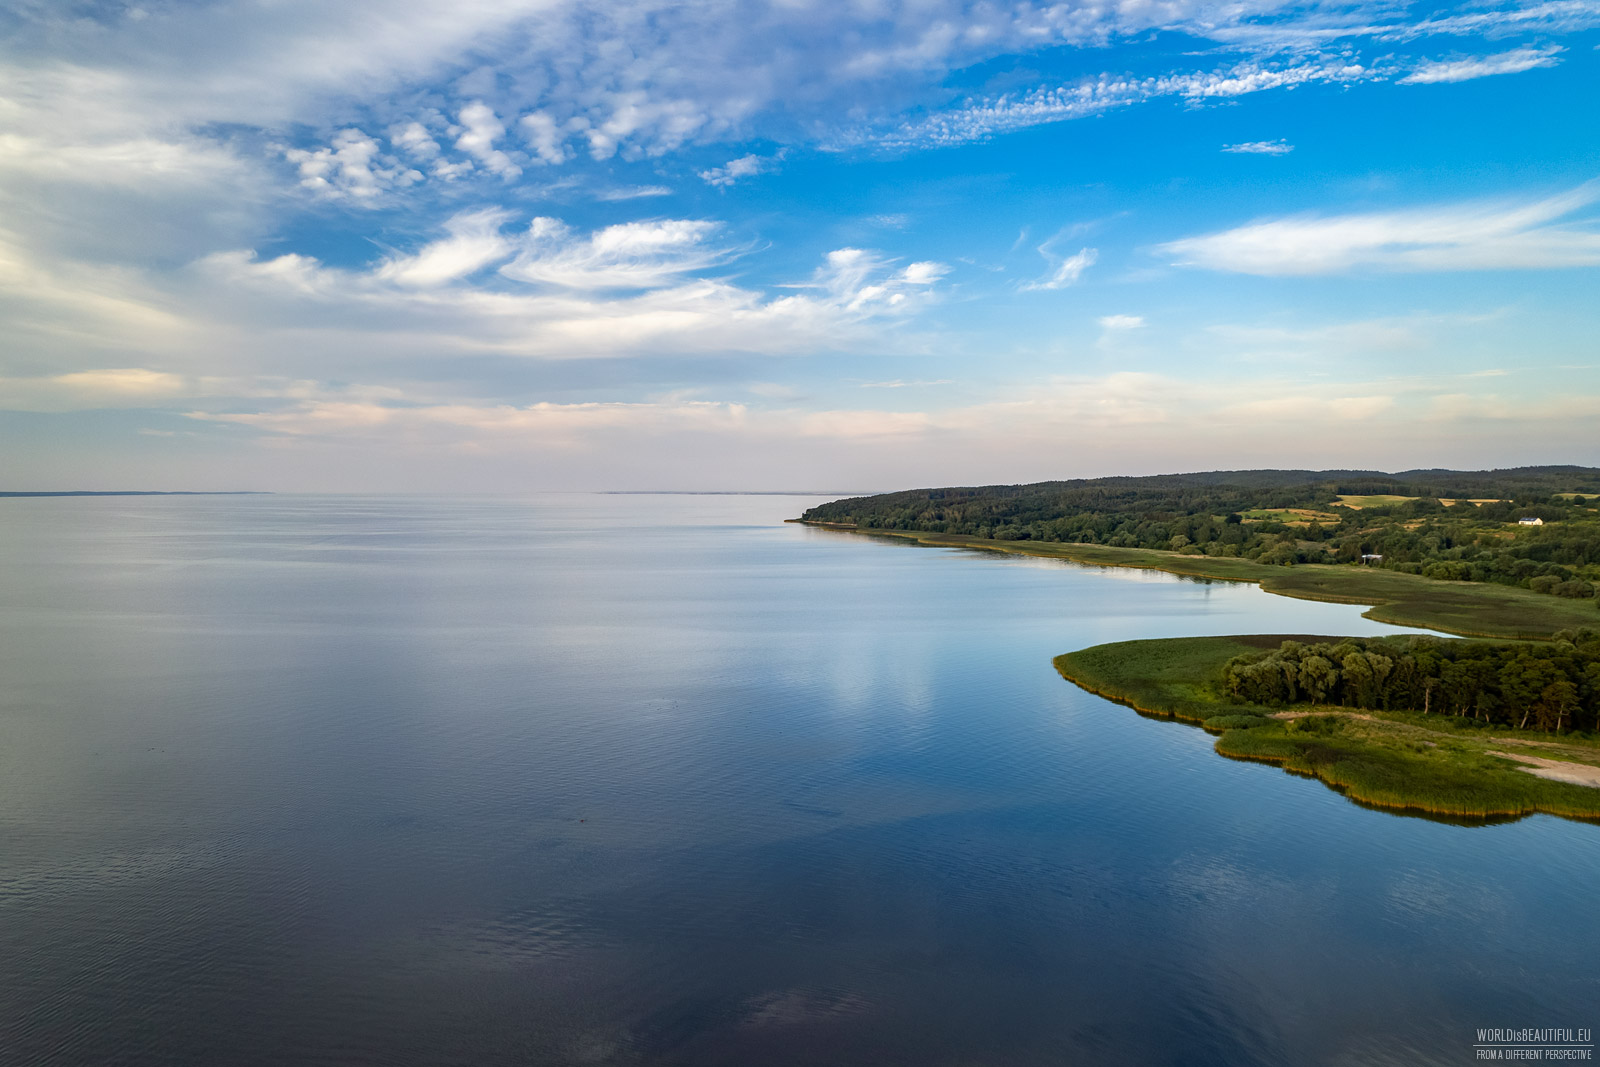 The Vistula Lagoon